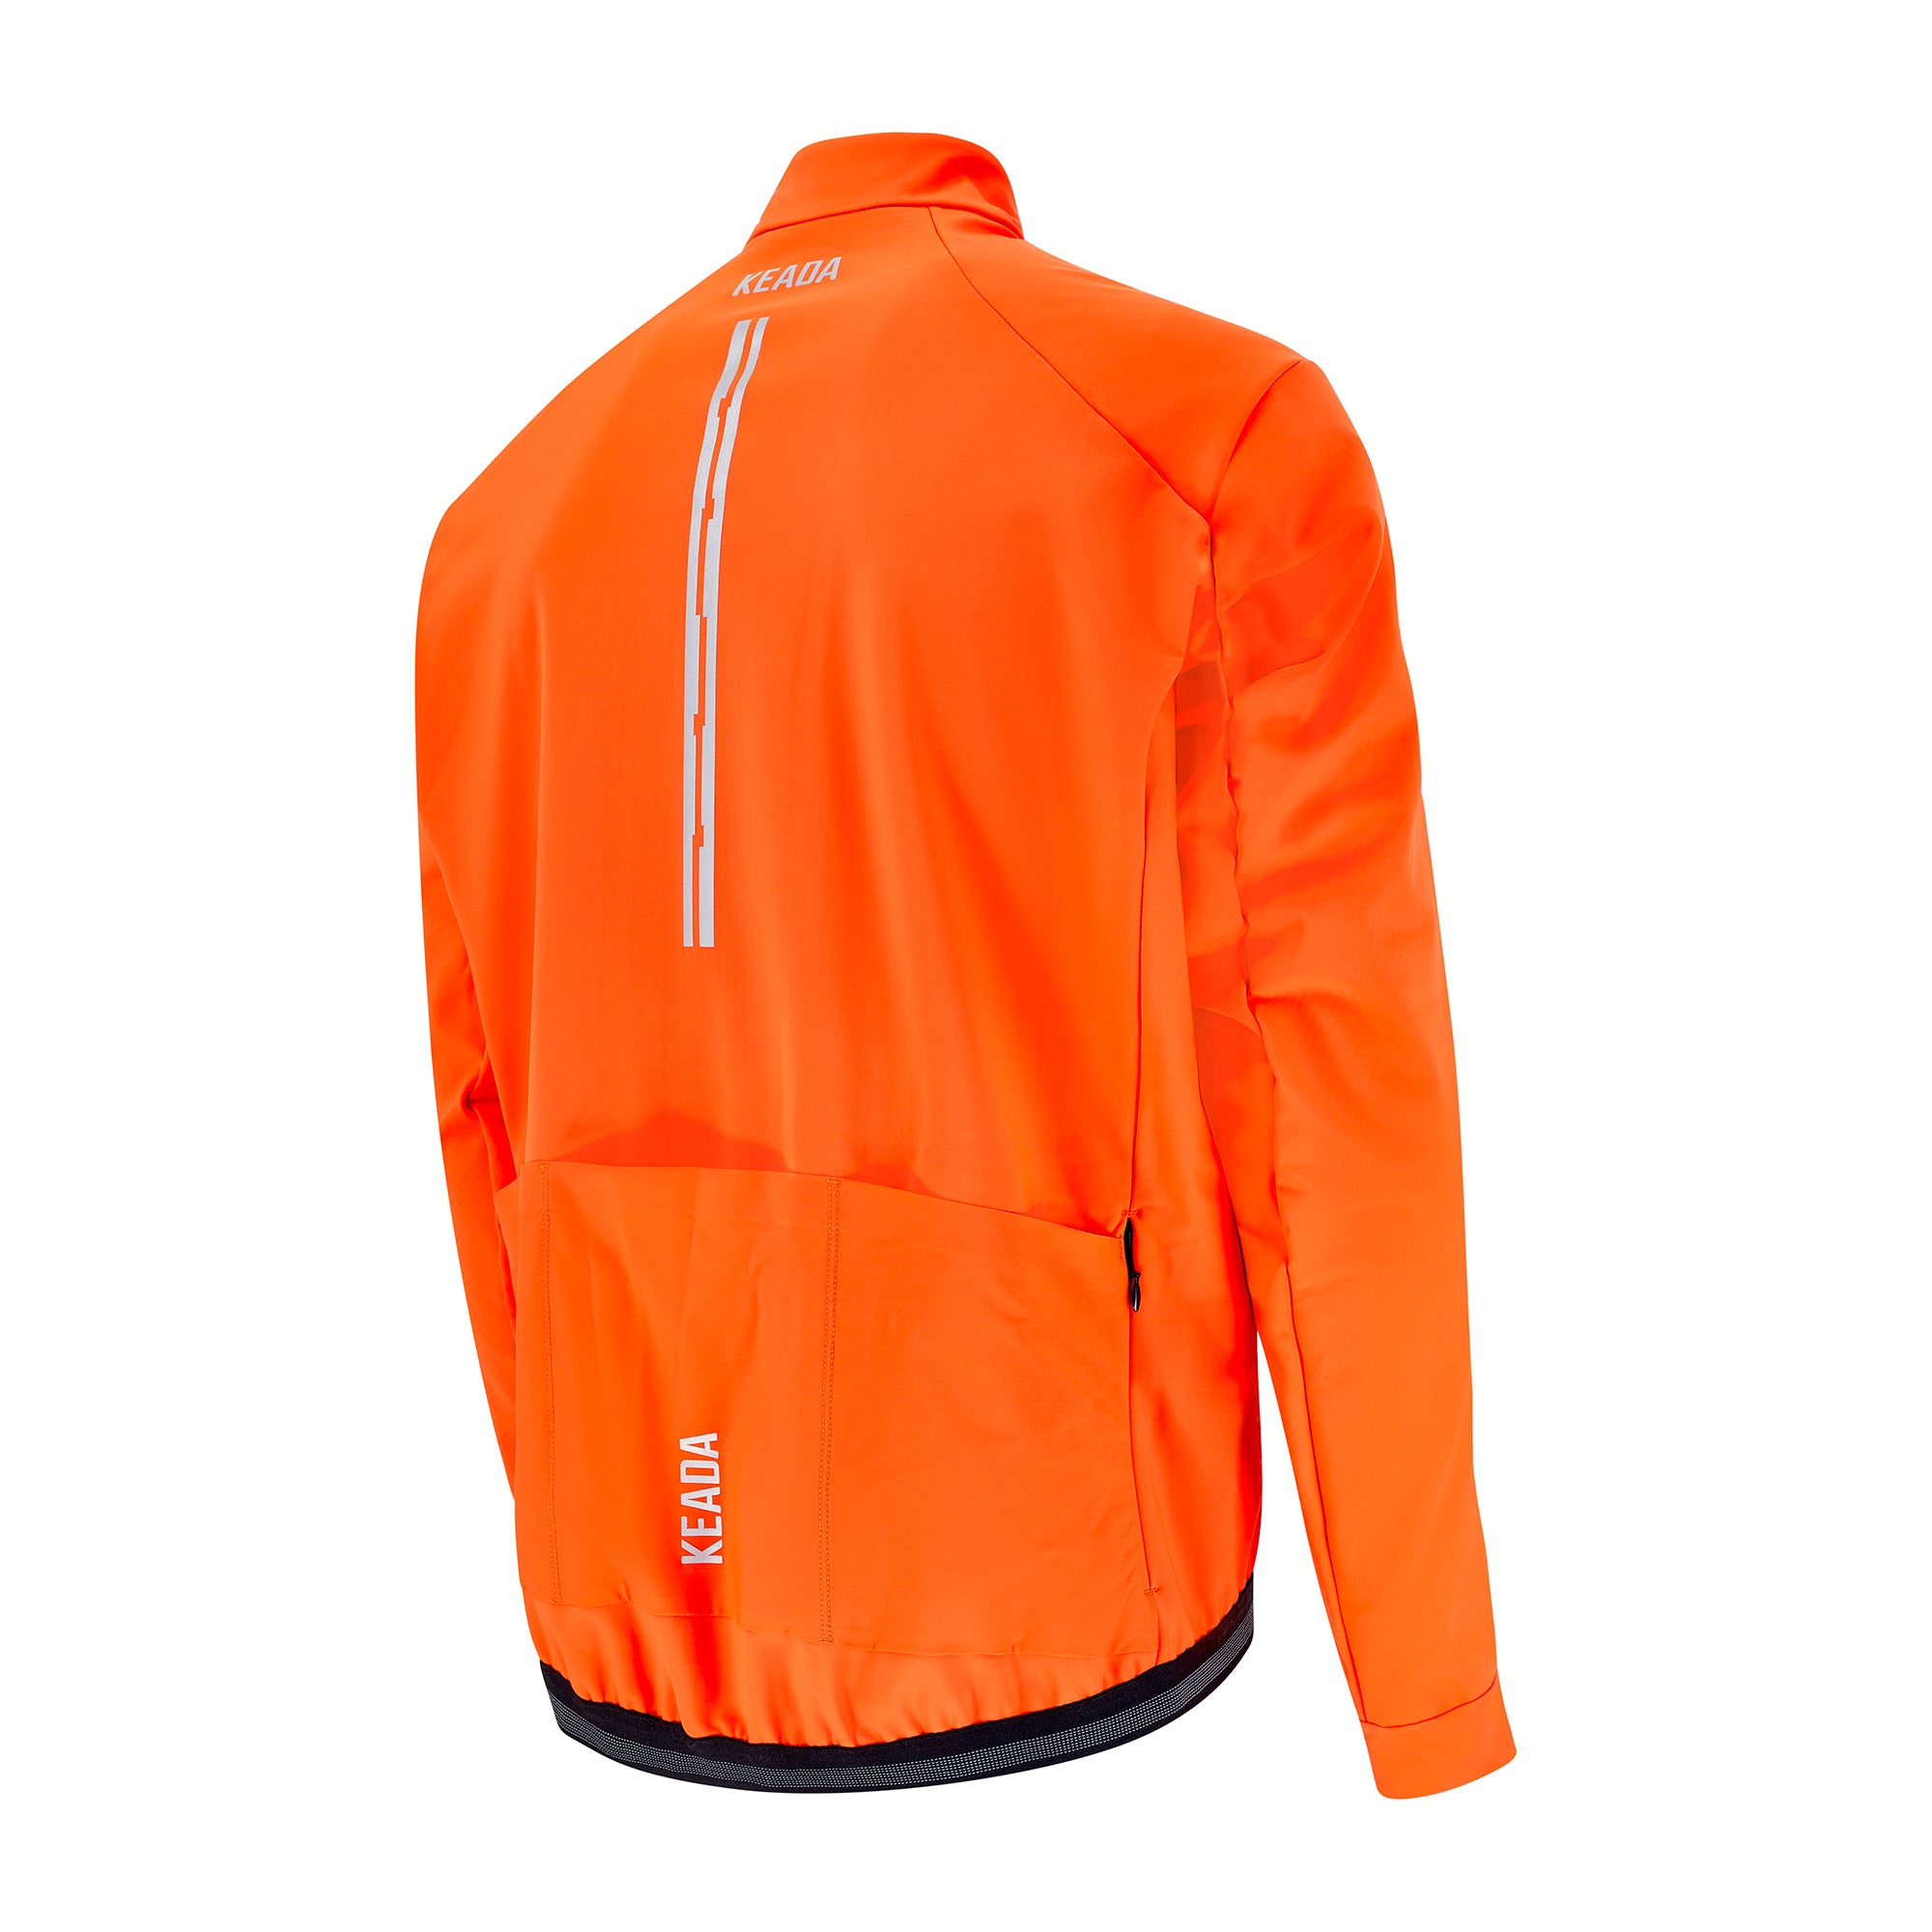 Men's Storm Jacket - Orange